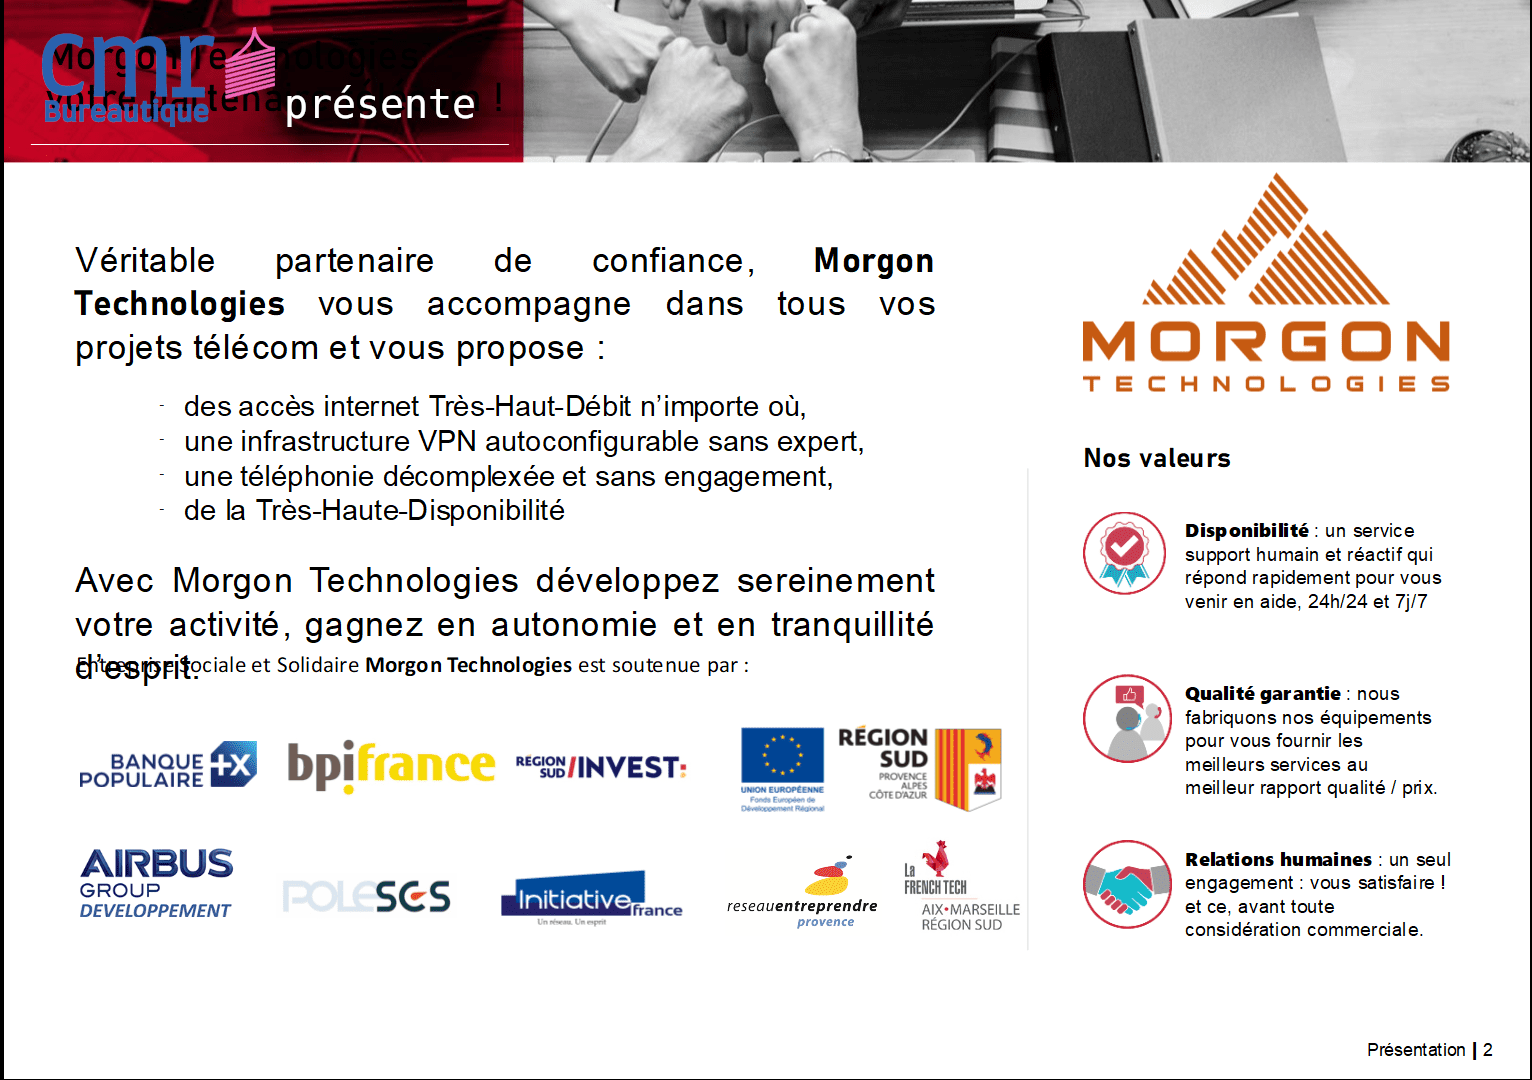 CMR Bureautique, Ruy-Montceau, Isère, présente la brique, accès internet et téléphonie partout.